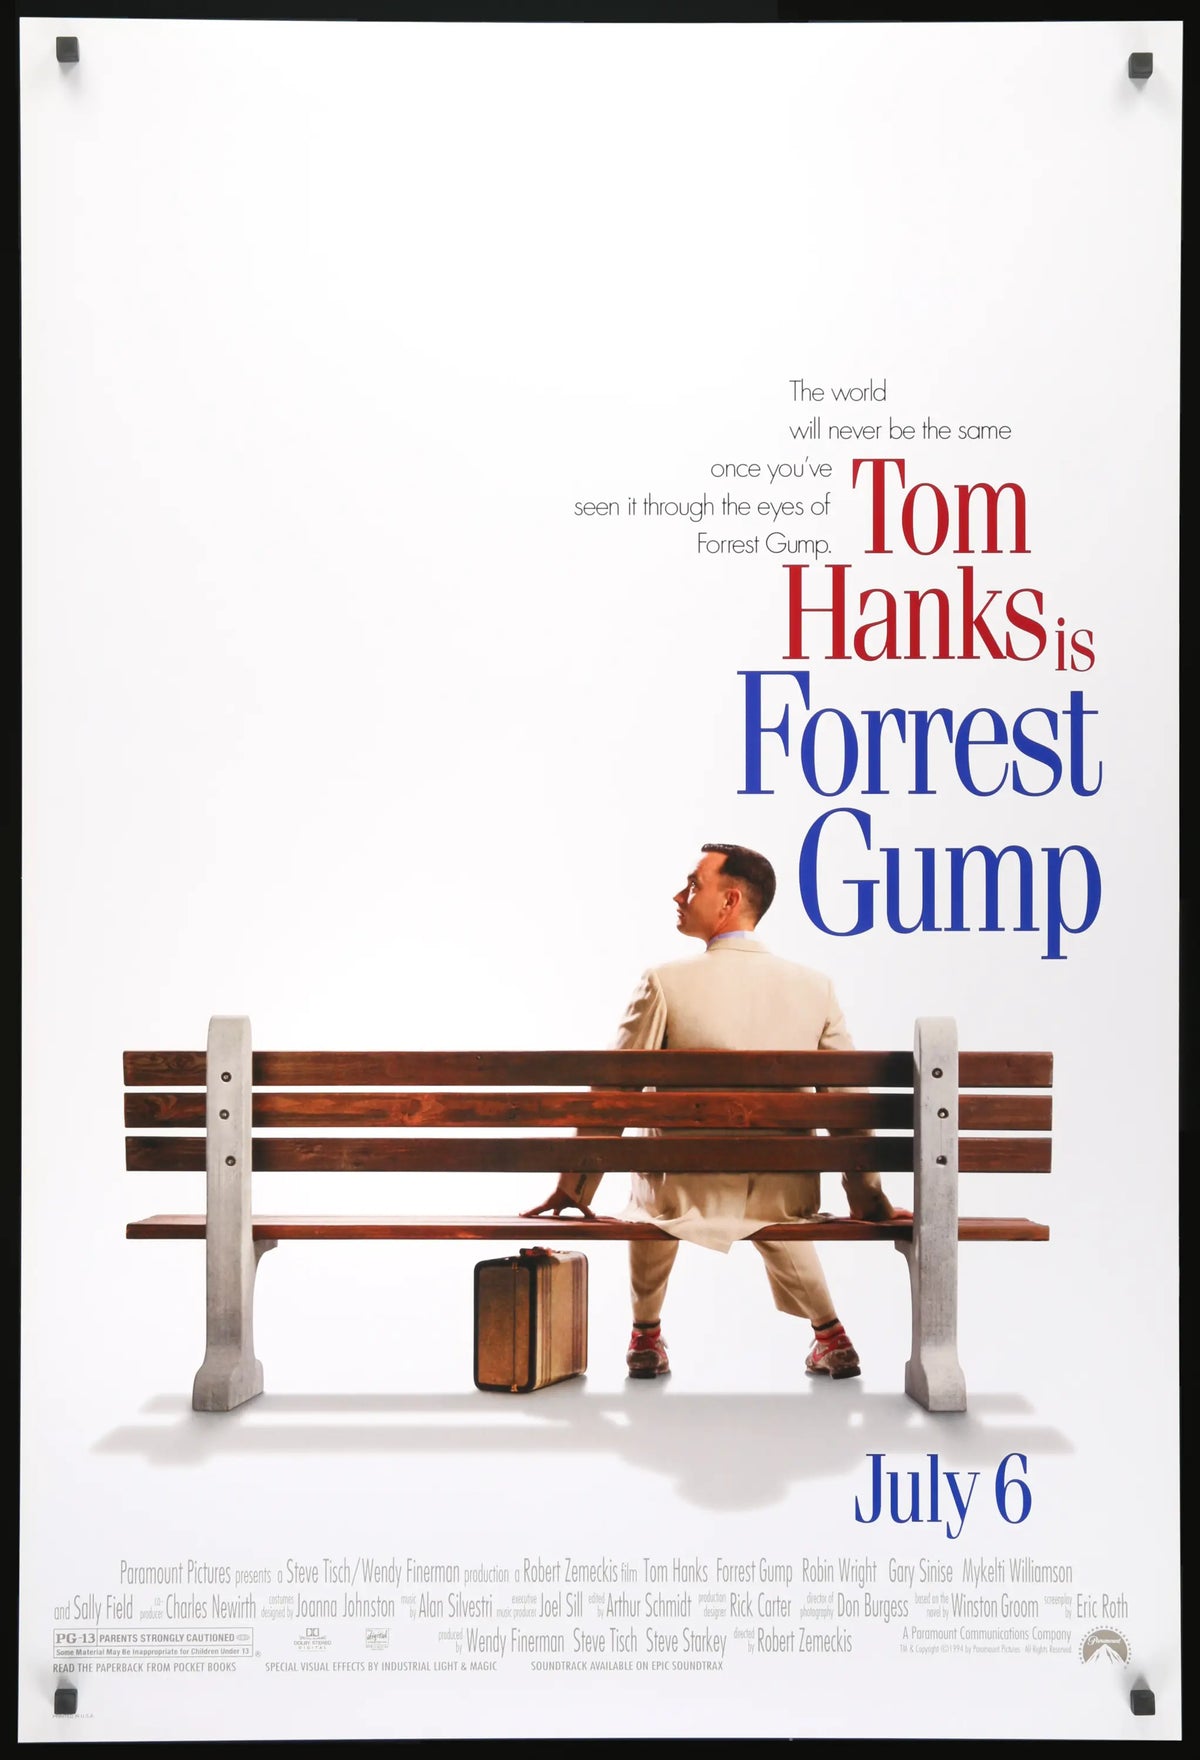 Forrest Gump (1994) original movie poster for sale at Original Film Art